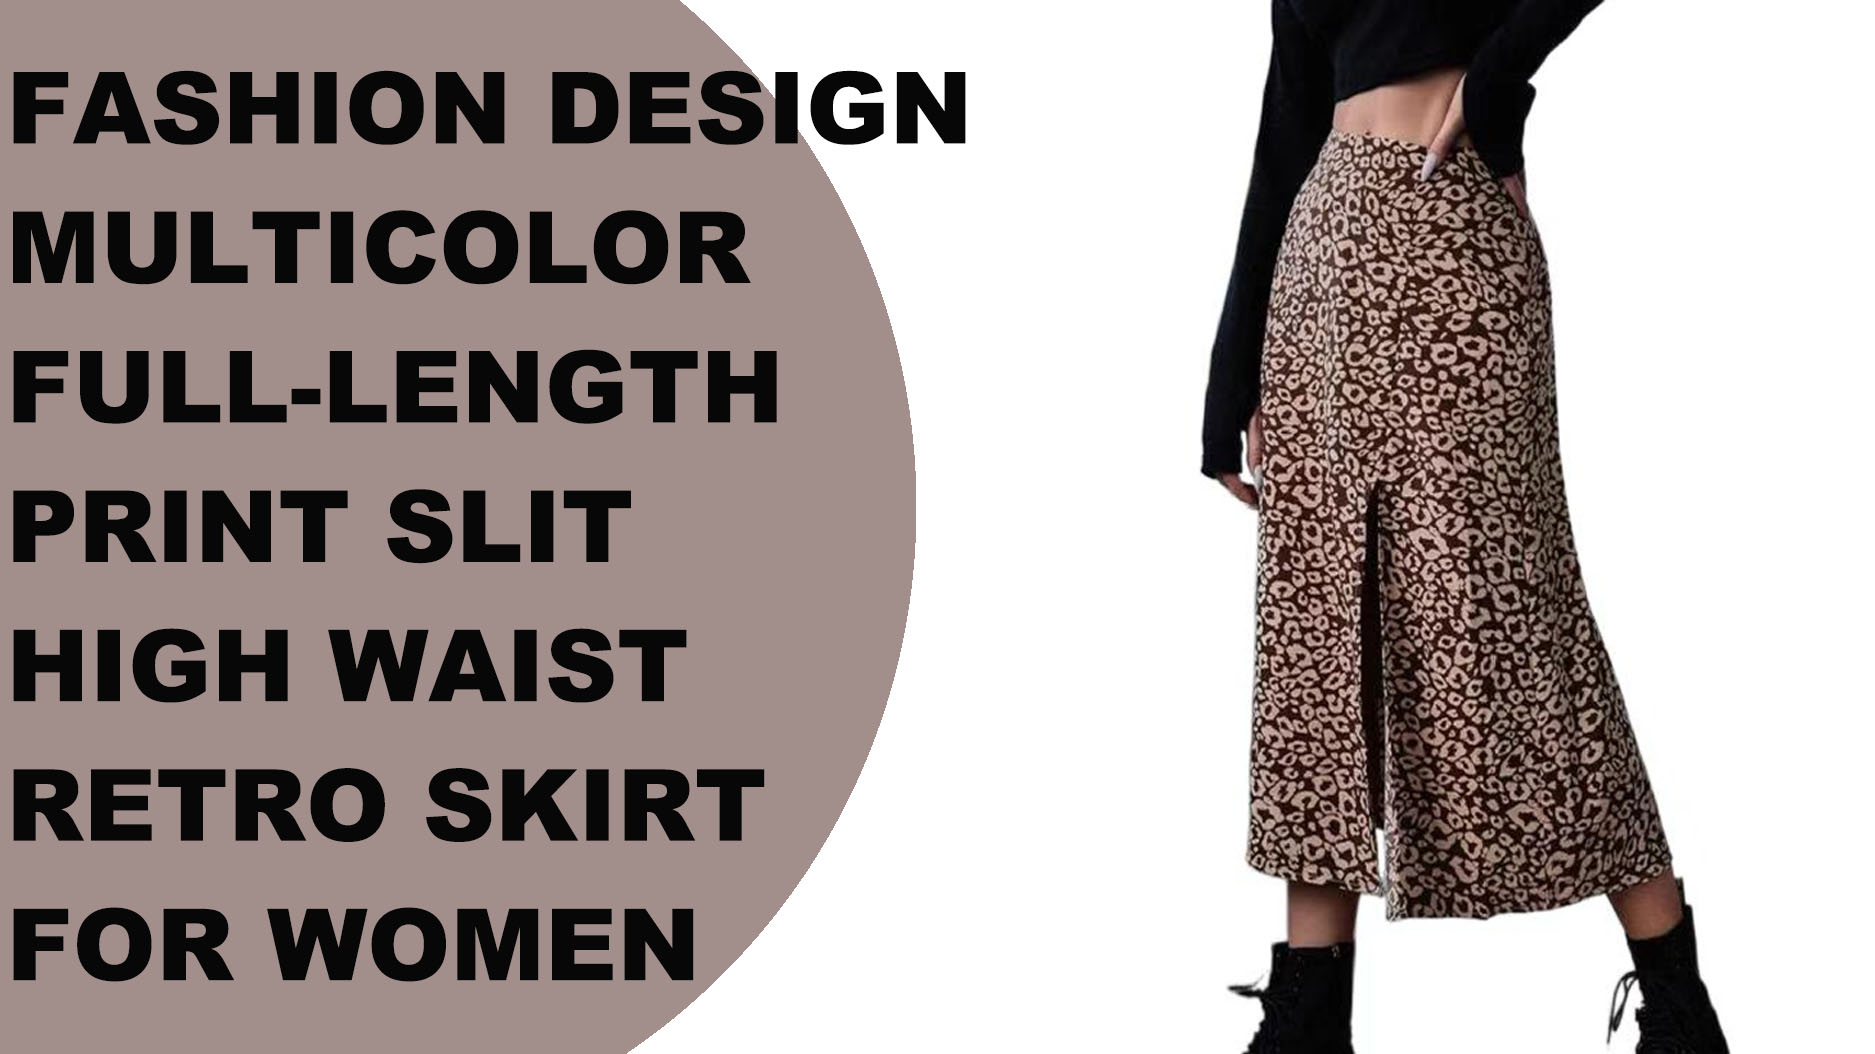 Jupe rétro taille haute fendue imprimée multicolore sur toute la longueur pour femmes, design de mode